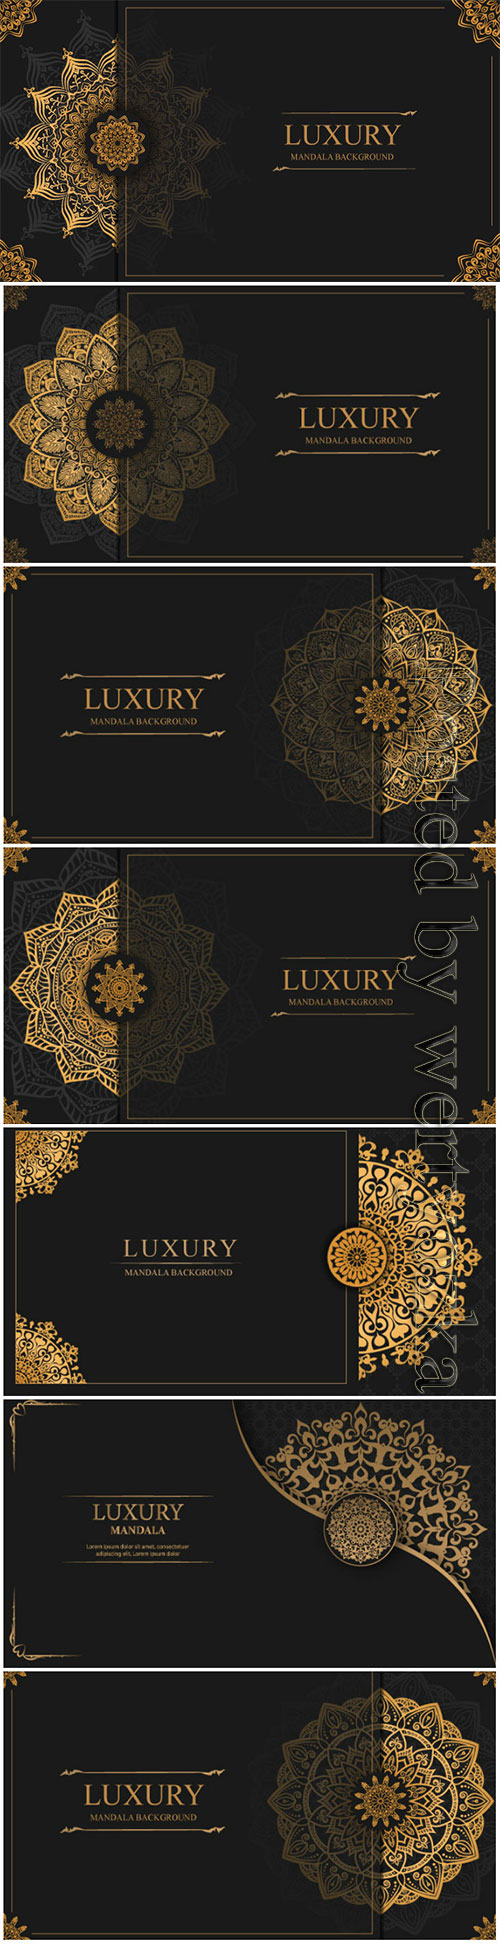 Luxury decorative mandala vector background # 5